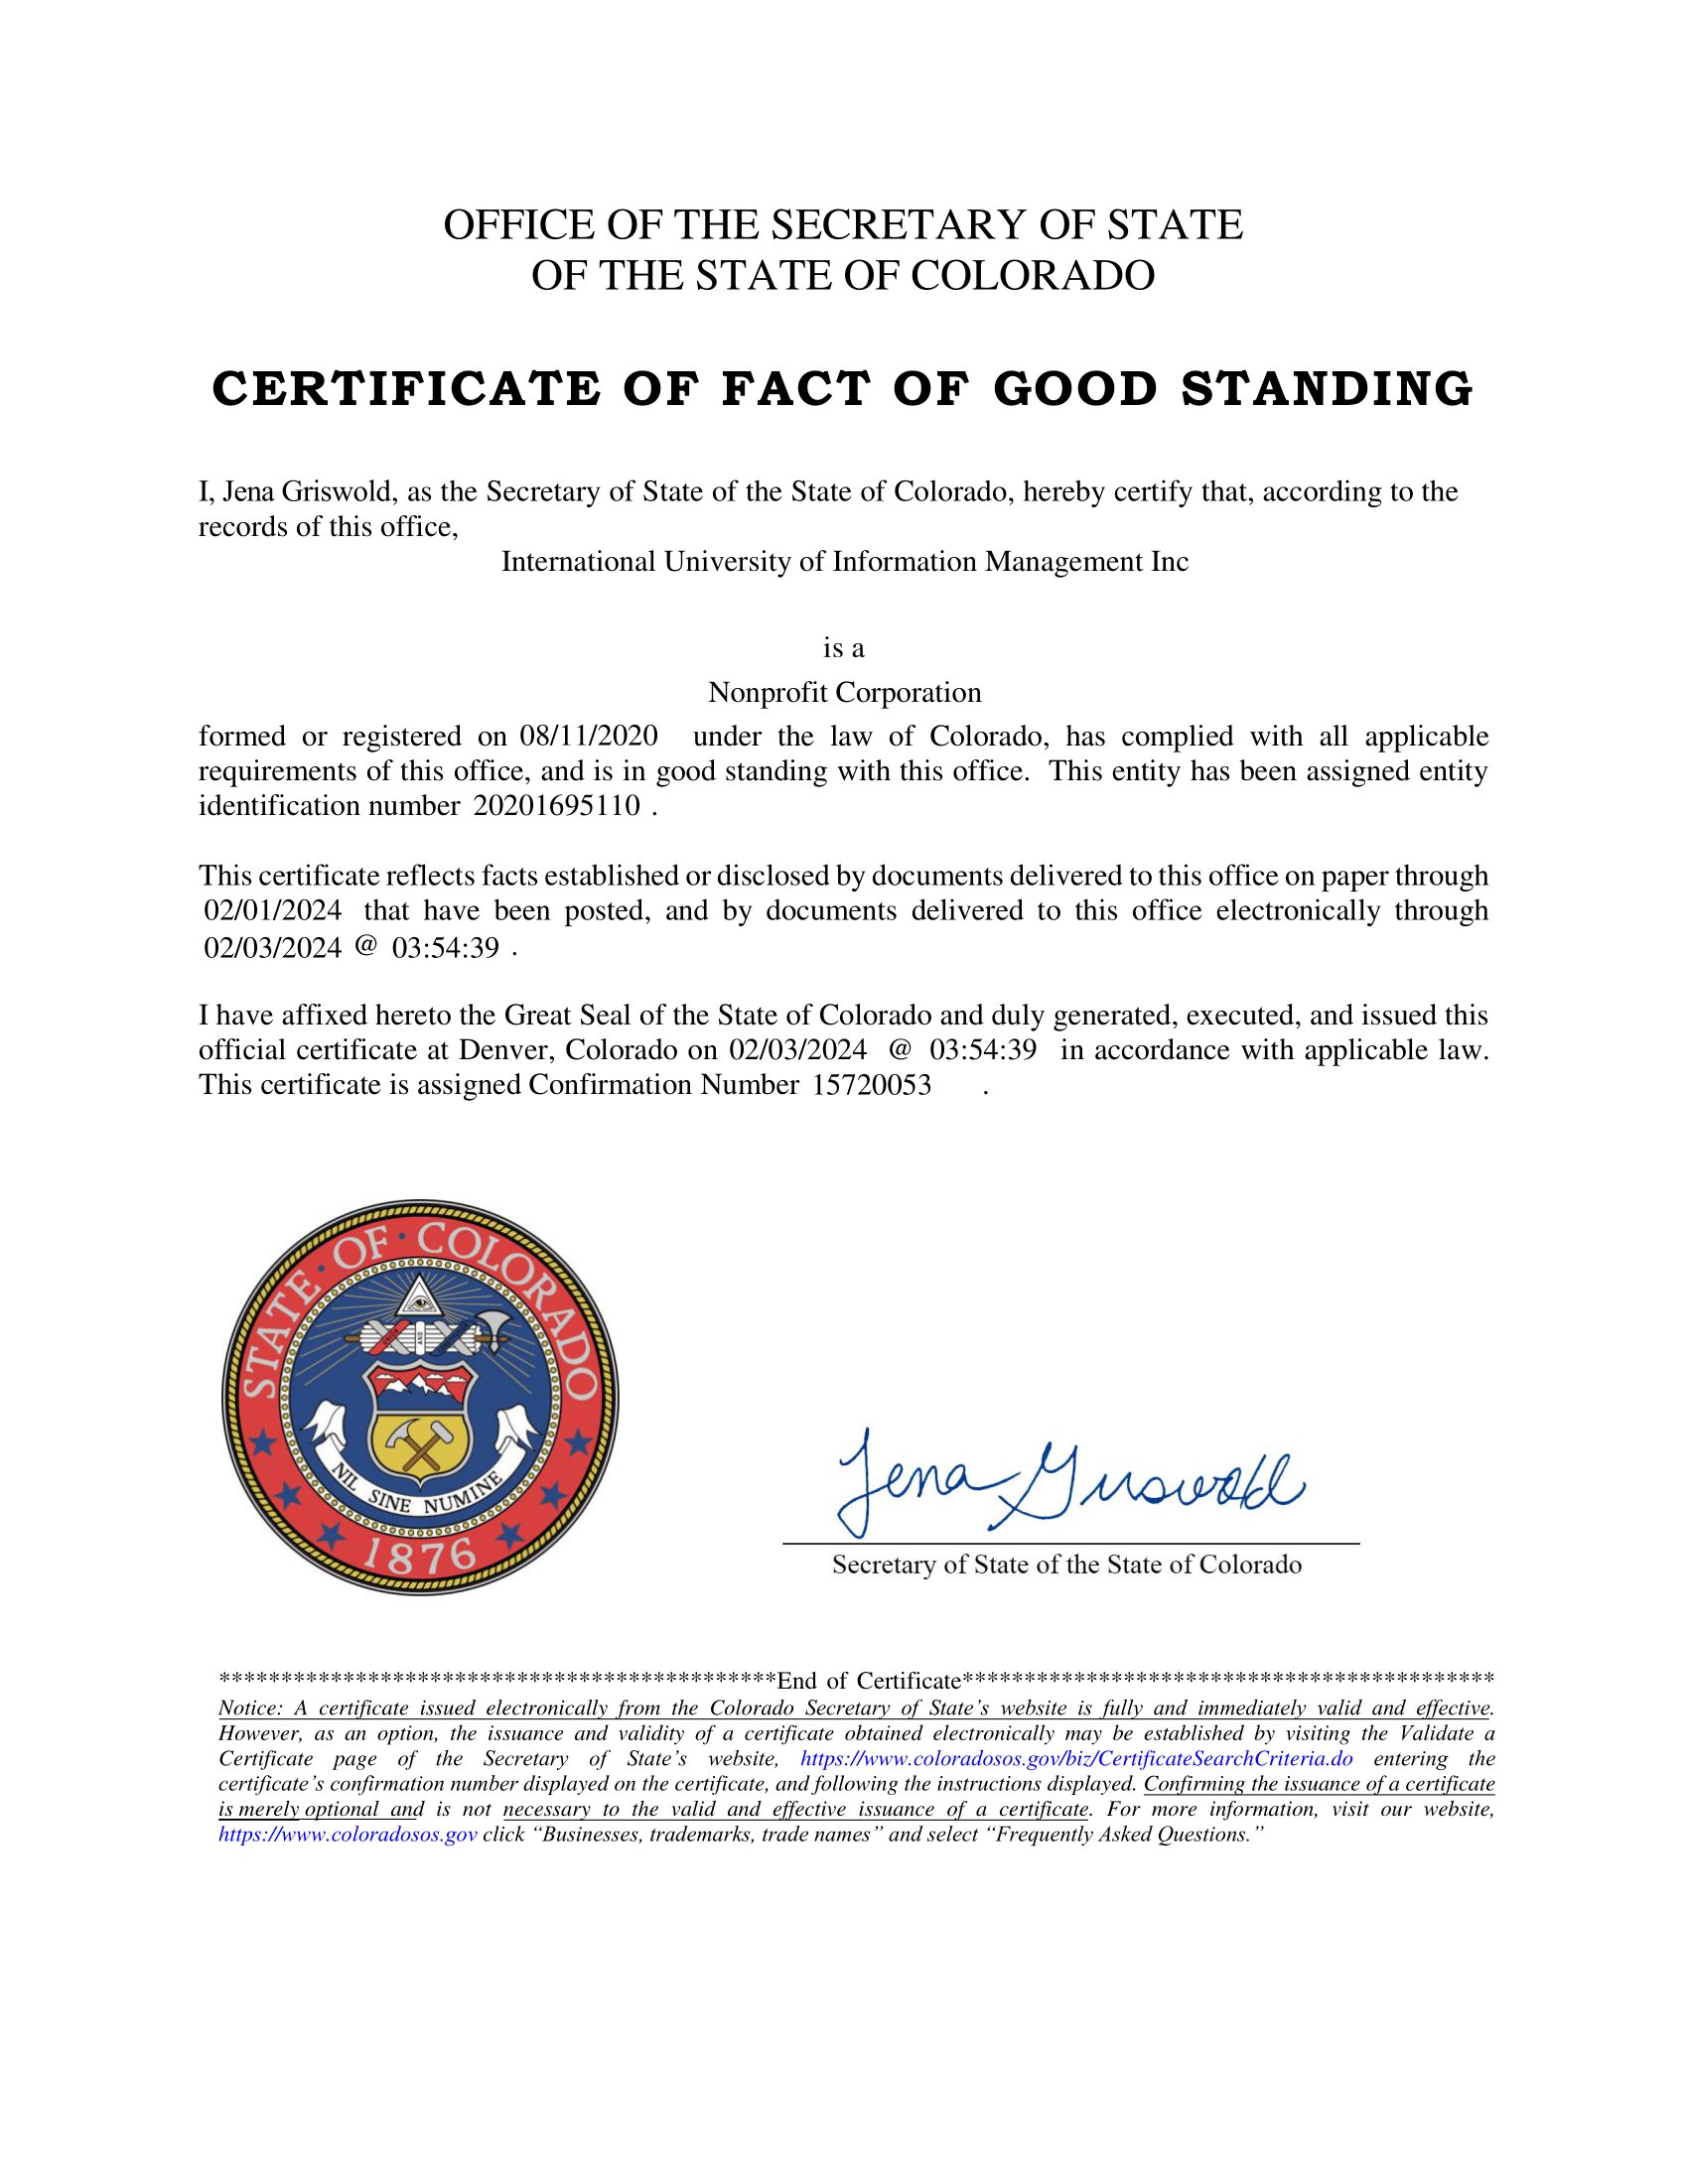 IUIM CERT_GS_D - Certificate of Good Standing